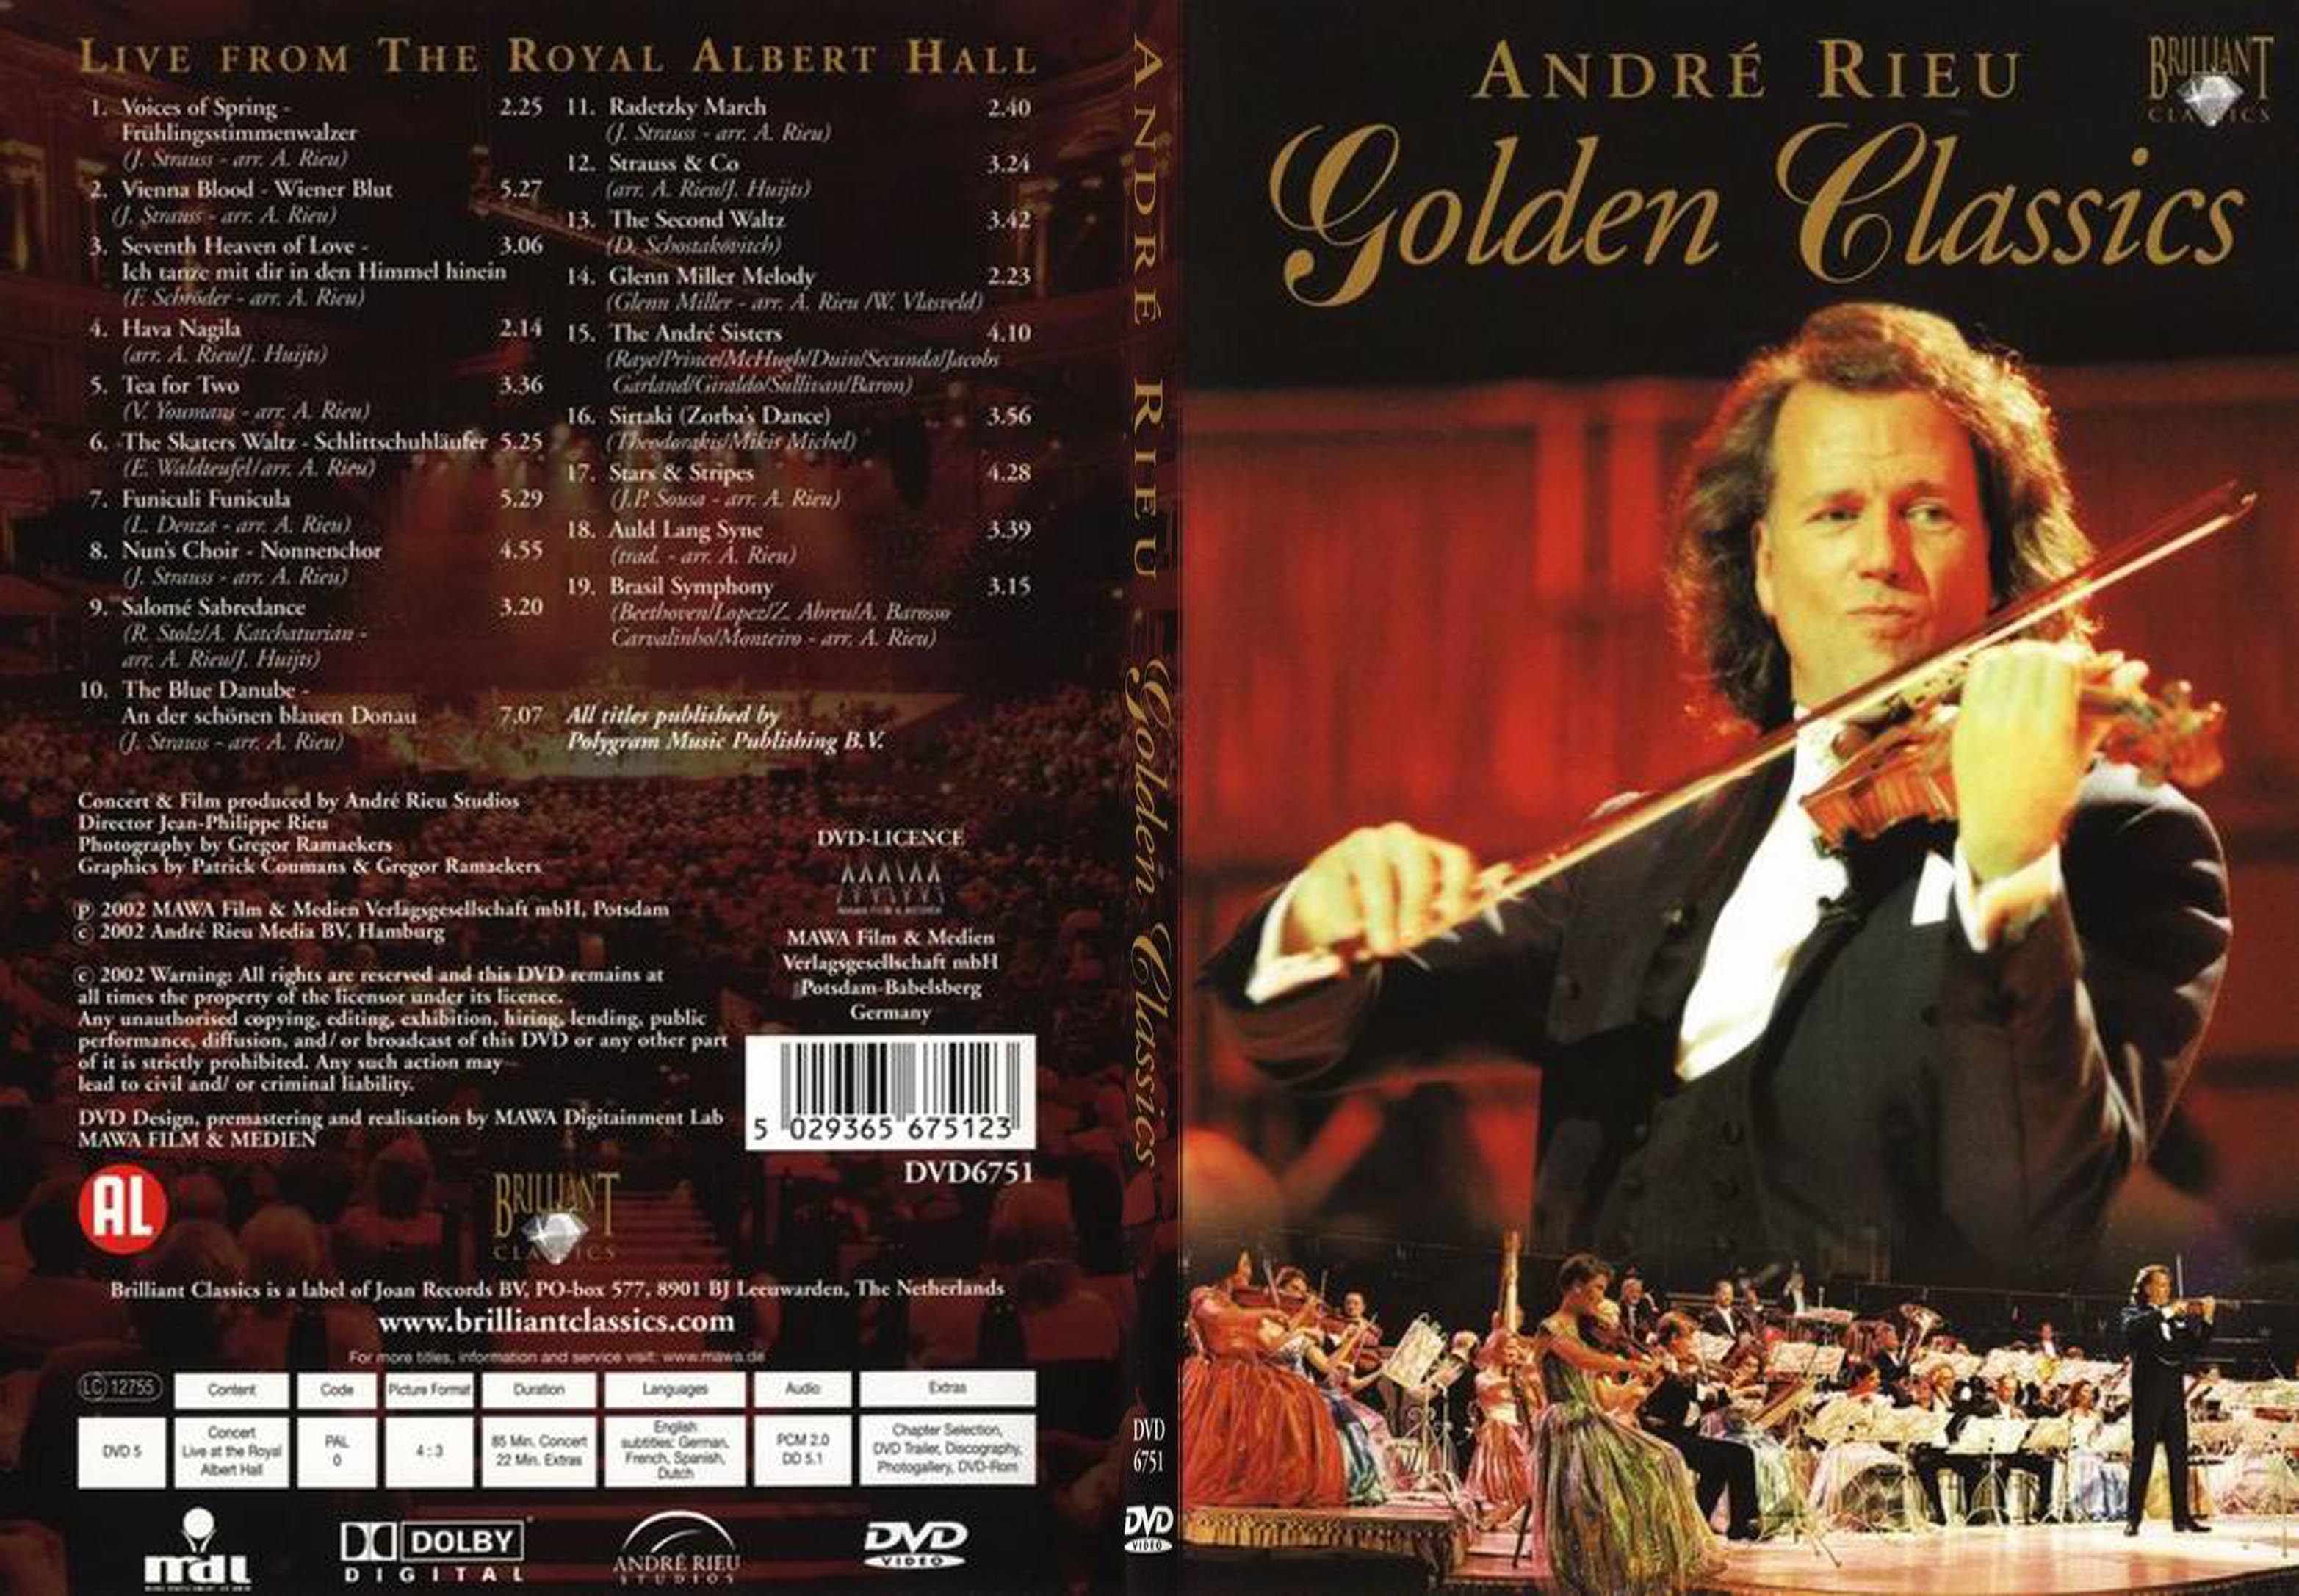 Jaquette DVD Andr Rieu Golden classics - SLIM